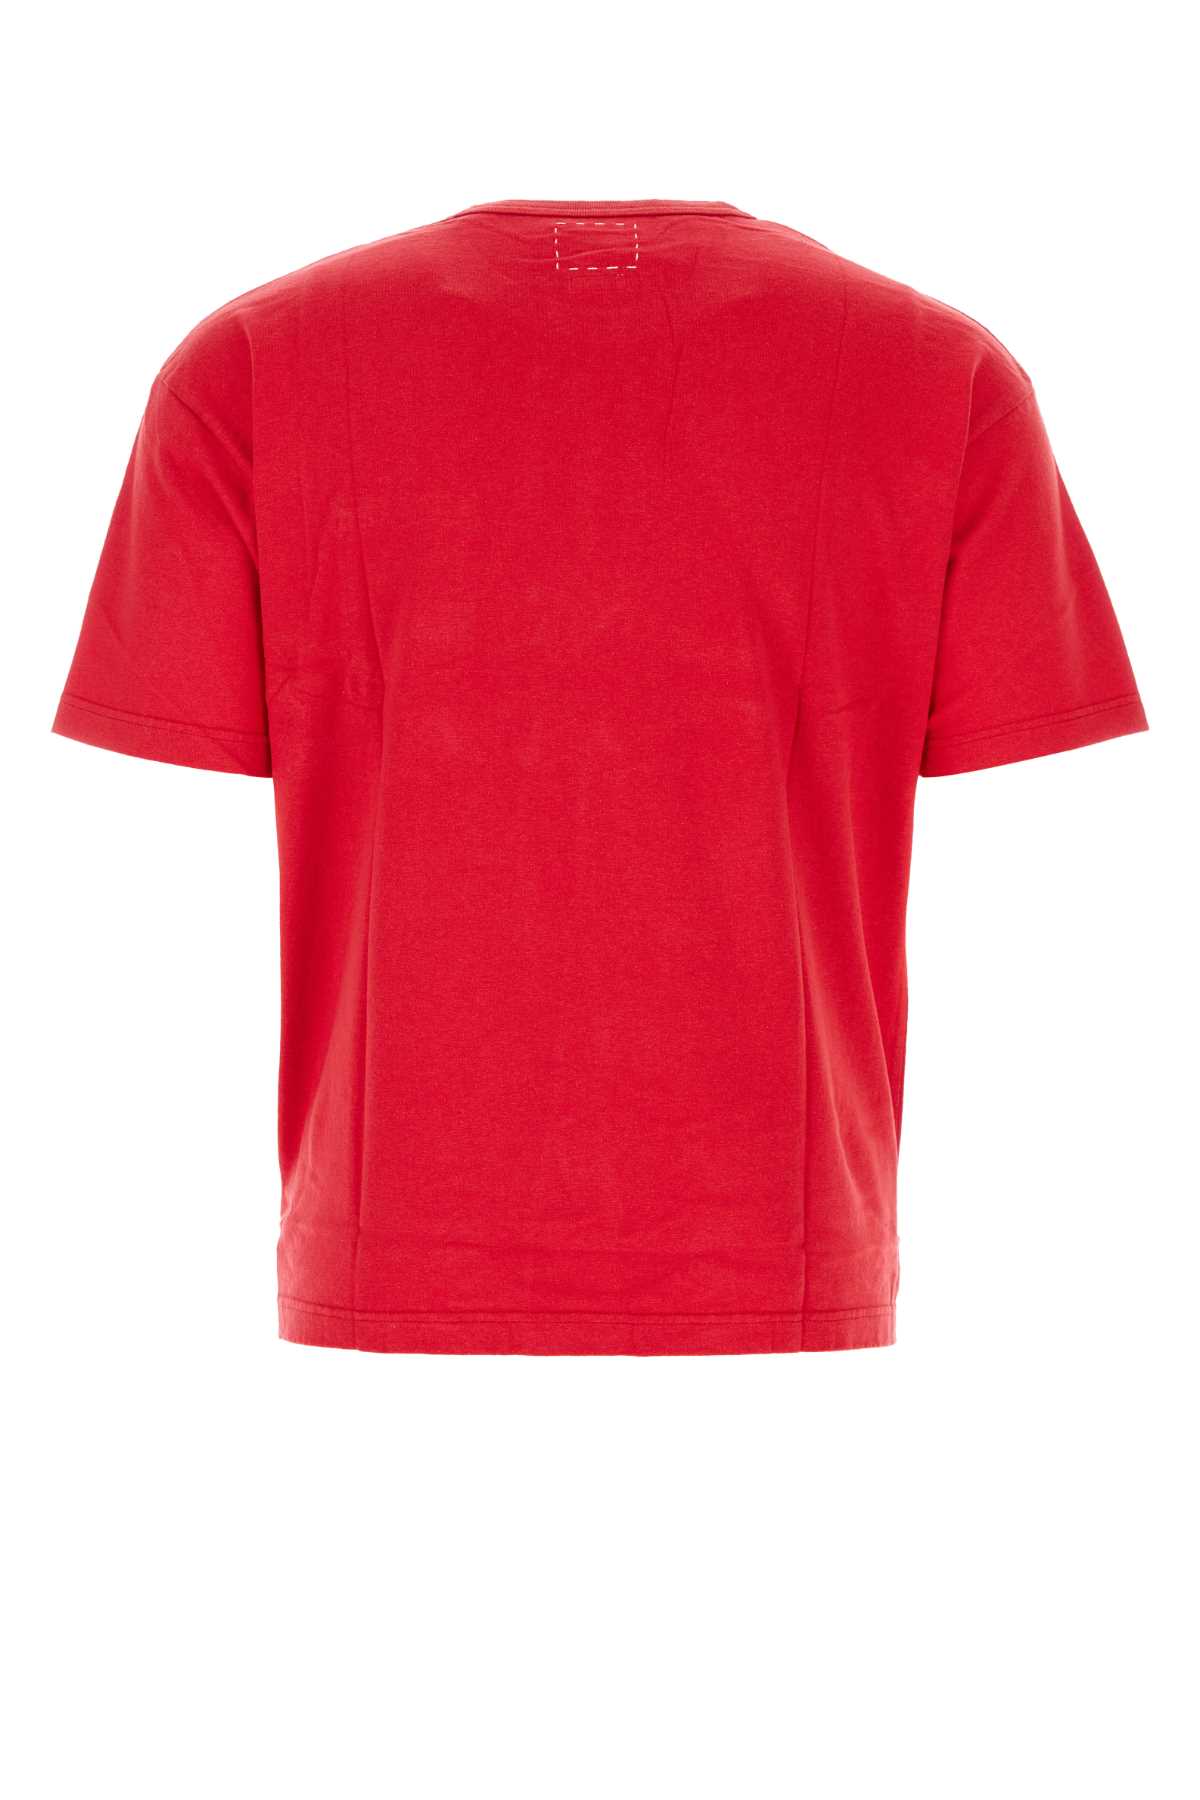 Shop Visvim Red Cotton Jumbo T-shirt